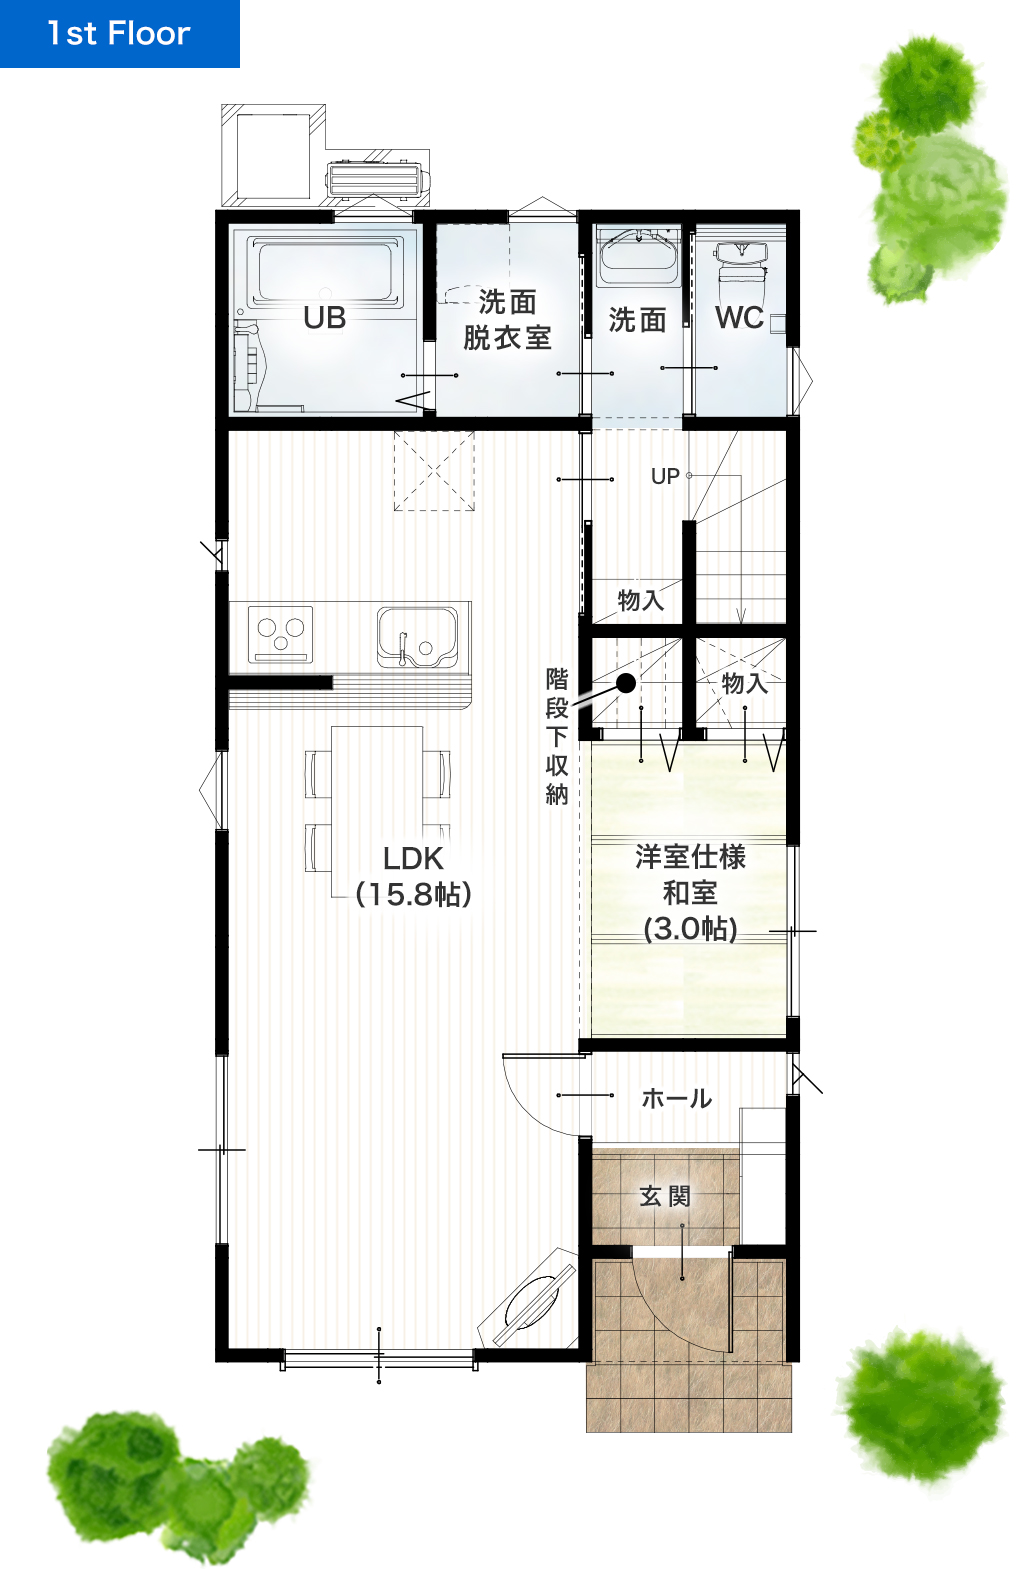 熊本市中央区帯山1丁目3期1号地 28坪 4LDK 建売・一戸建ての新築物件 1階間取り図